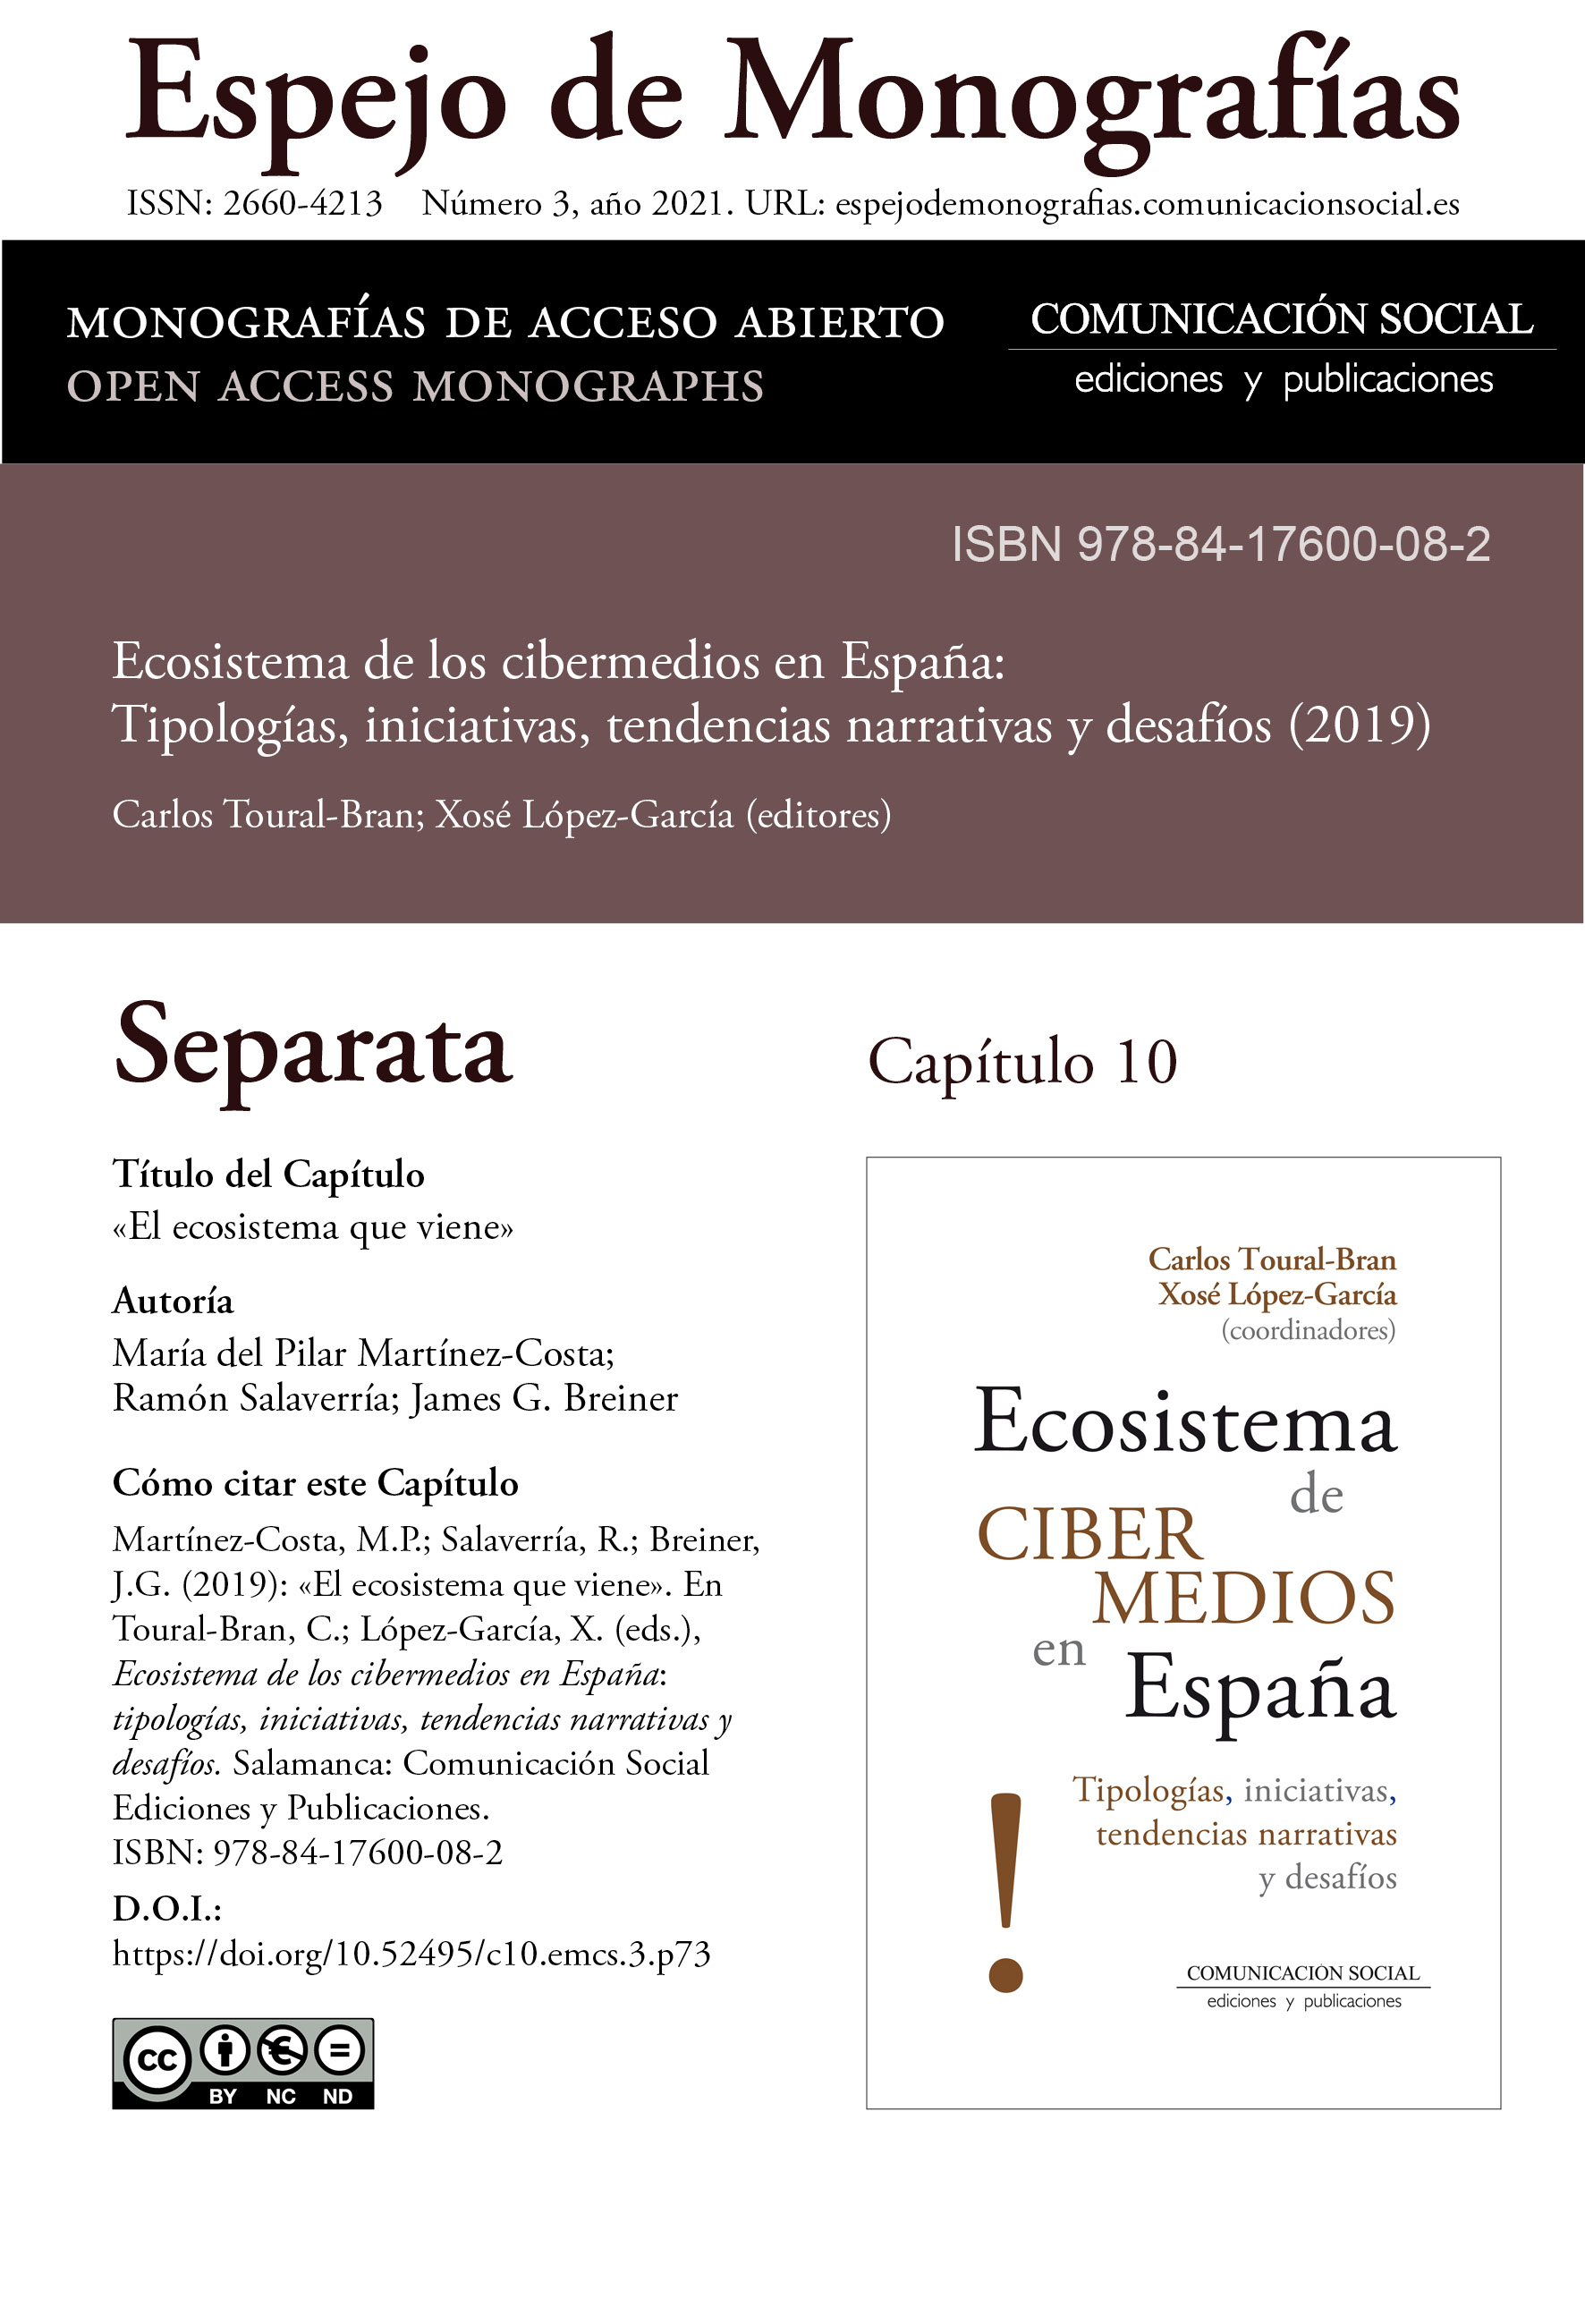 Separata del Capítulo 10 correspondiente a la monografía Ecosistema de cibermedios en España